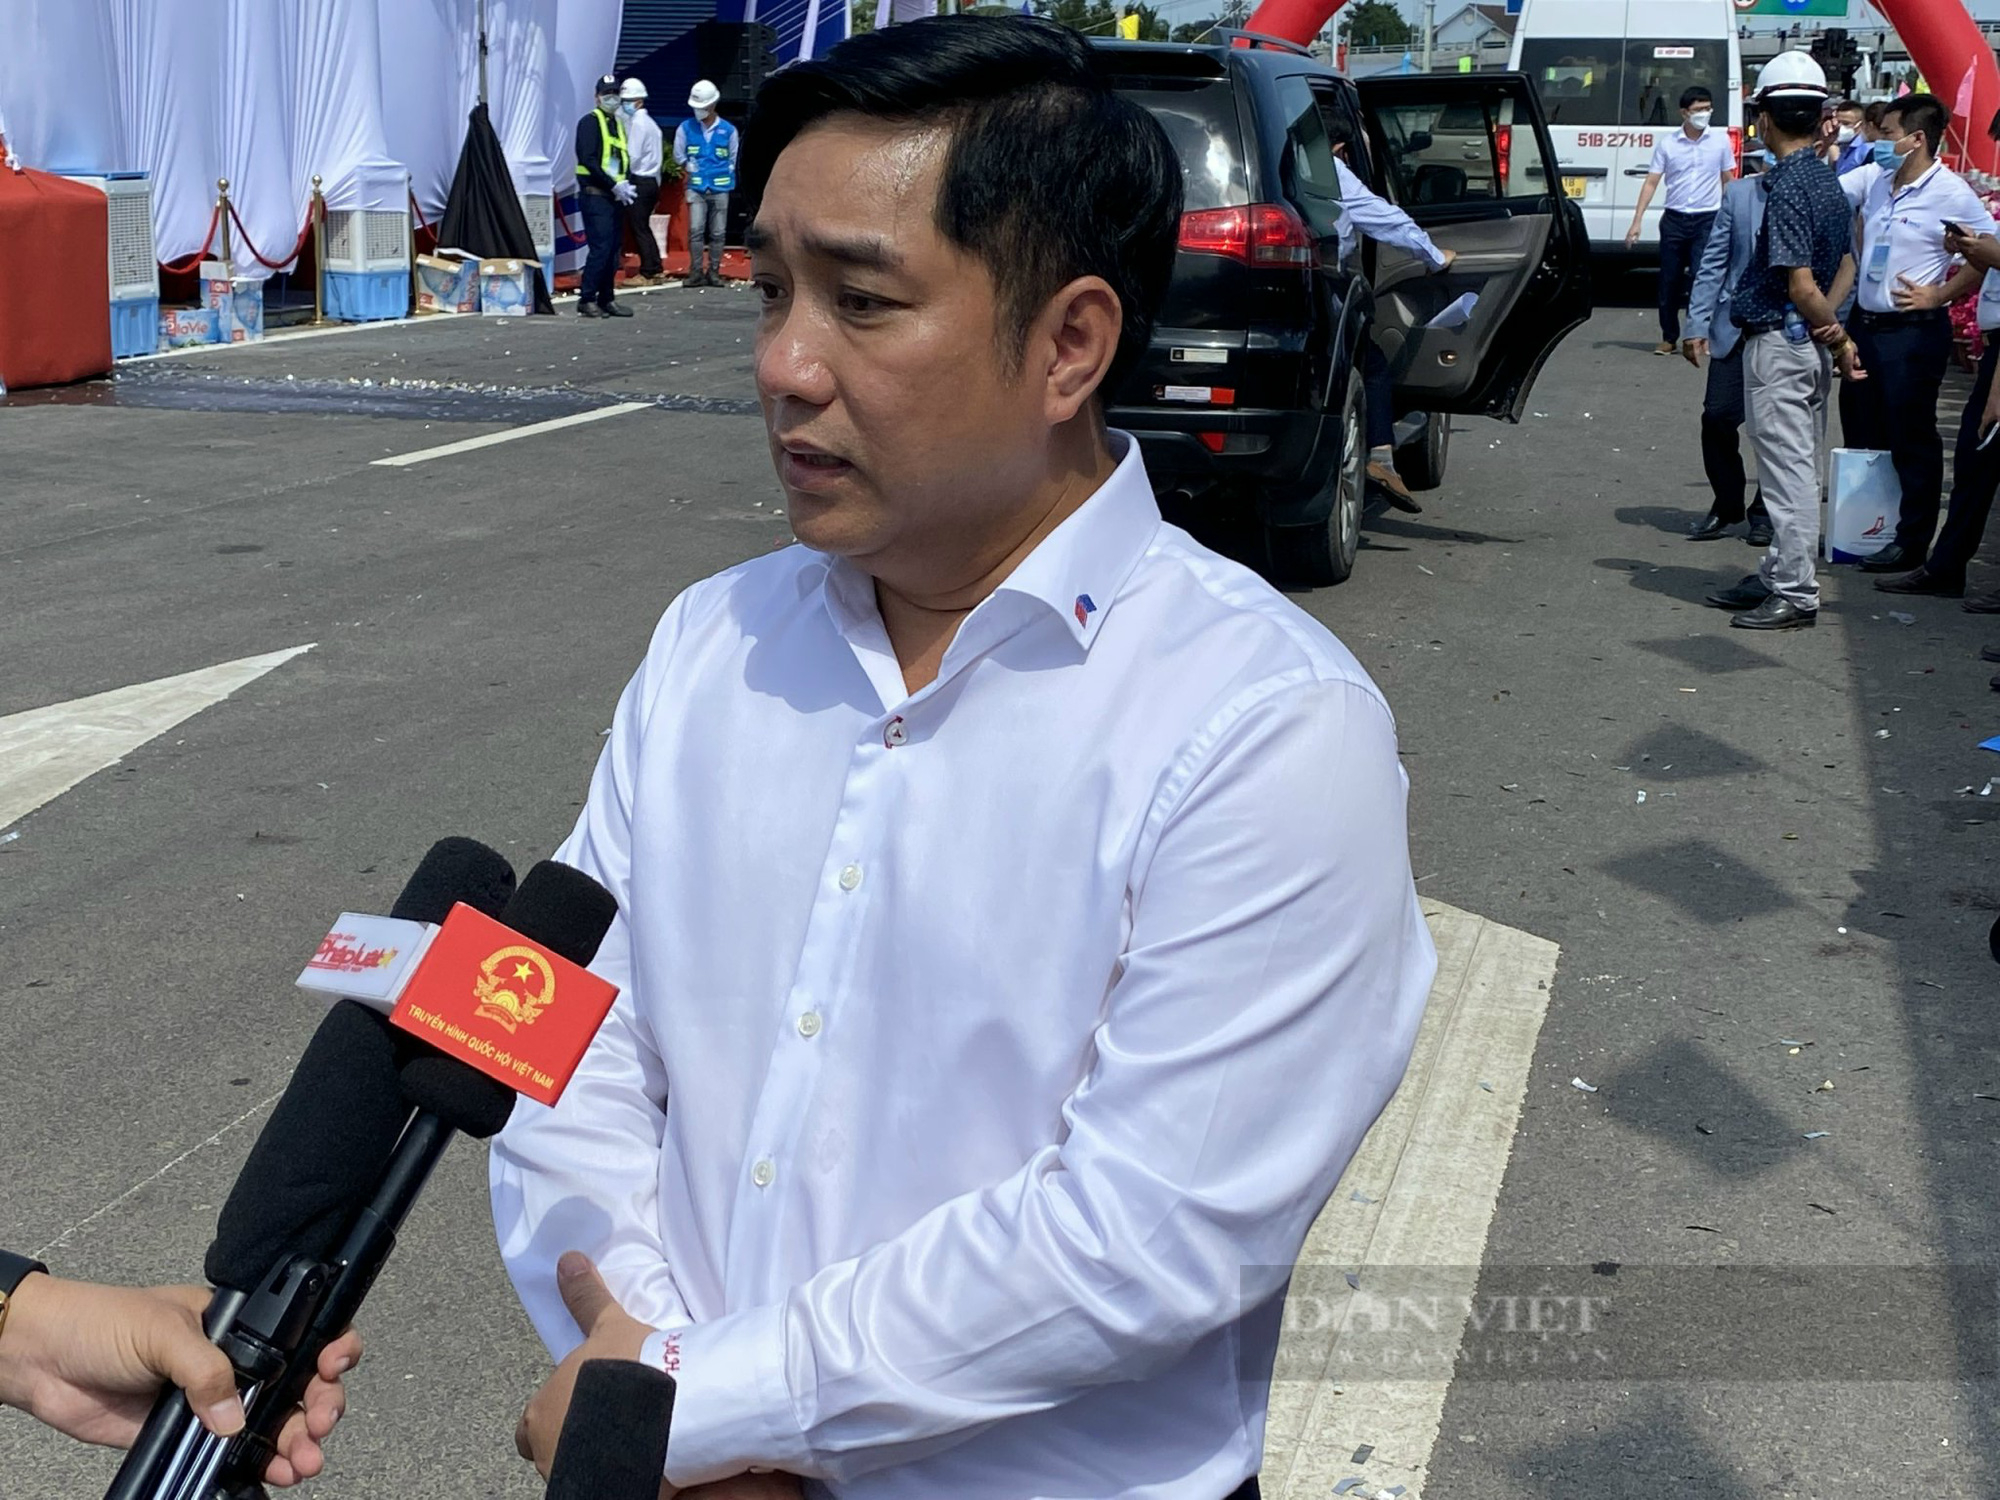 Chủ tịch nước Nguyễn Xuân Phúc: Cao tốc Trung Lương - Mỹ Thuận phải đẩy nhanh tiến độ khai thông toàn tuyến đến Cần Thơ - Ảnh 4.